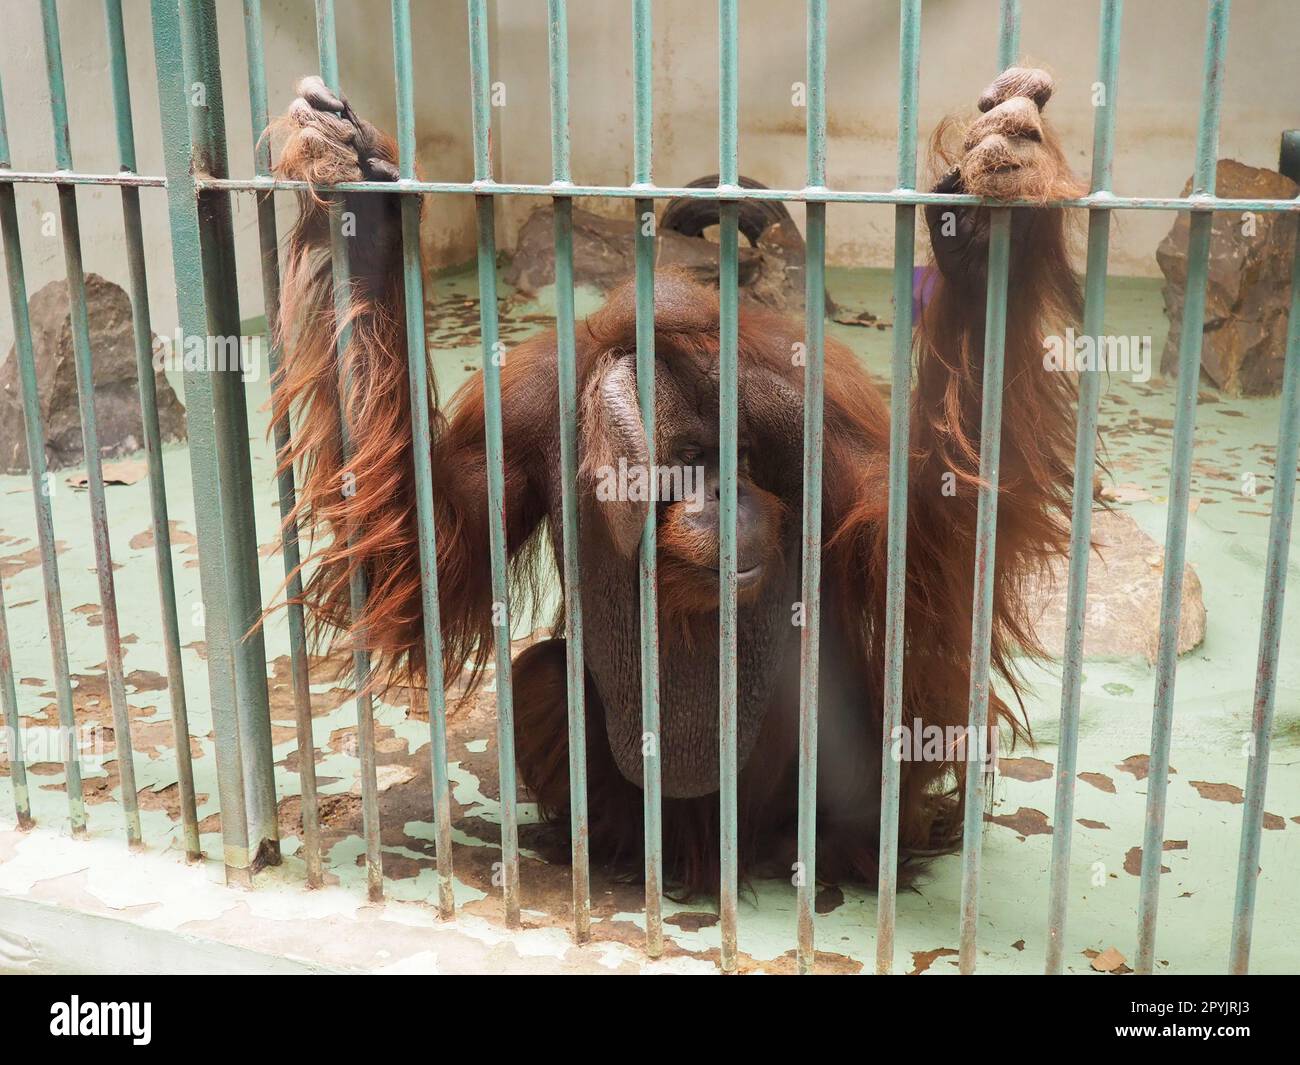 triste orangotango dietro le sbarre. Oranghi, orang utan - uomo della foresta, Pongo - genere di scimmie arboree, uno dei più vicini agli esseri umani nell'omologia del DNA Foto Stock